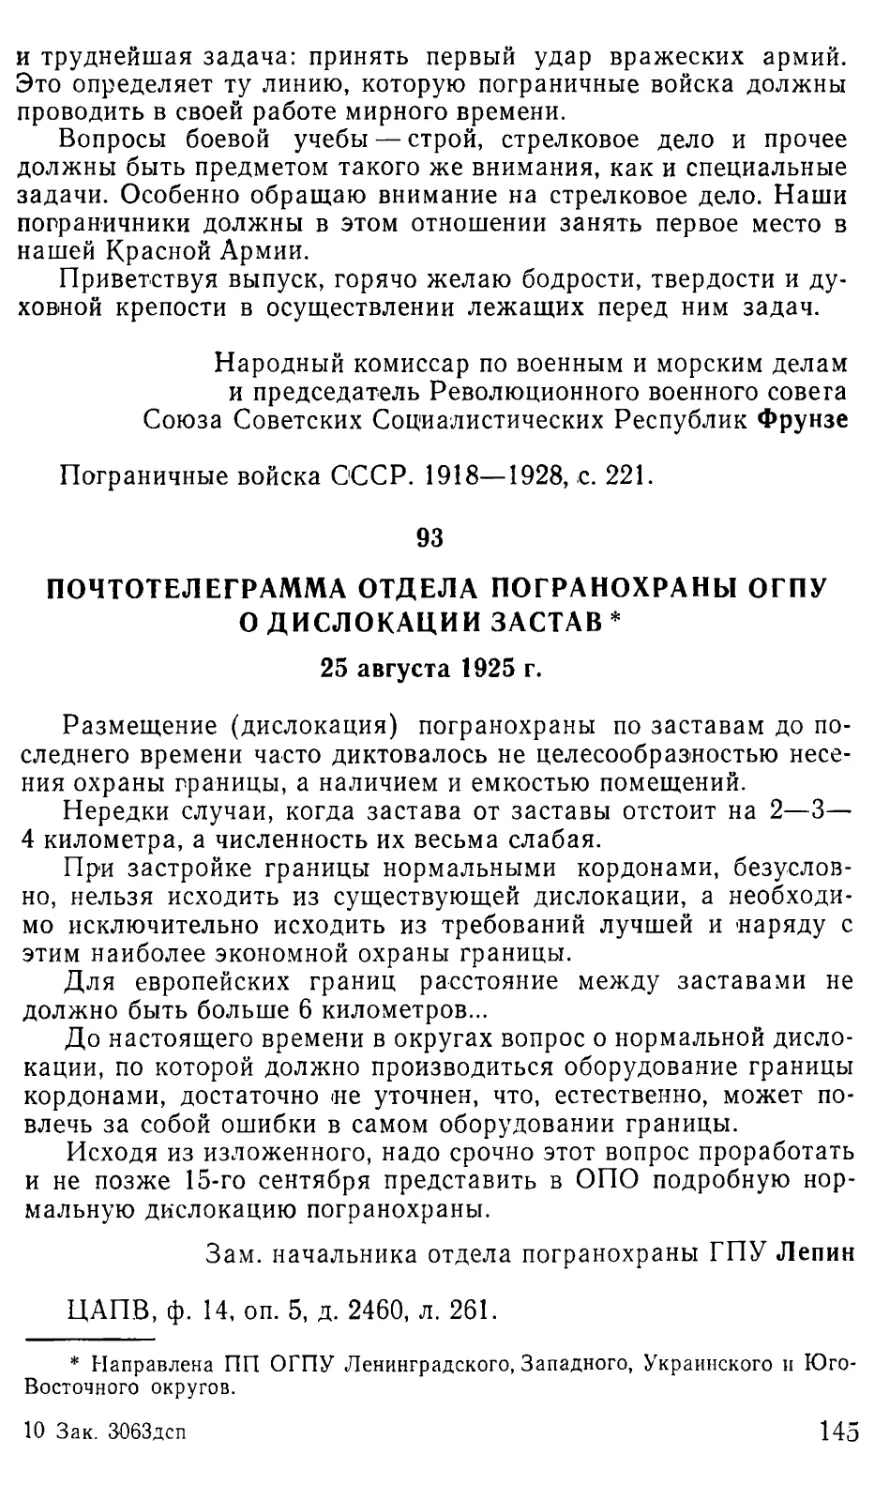 93. Почтотелеграмма отдела погранохраны ОГПУ о дислокации застав. 25 августа 1925 г